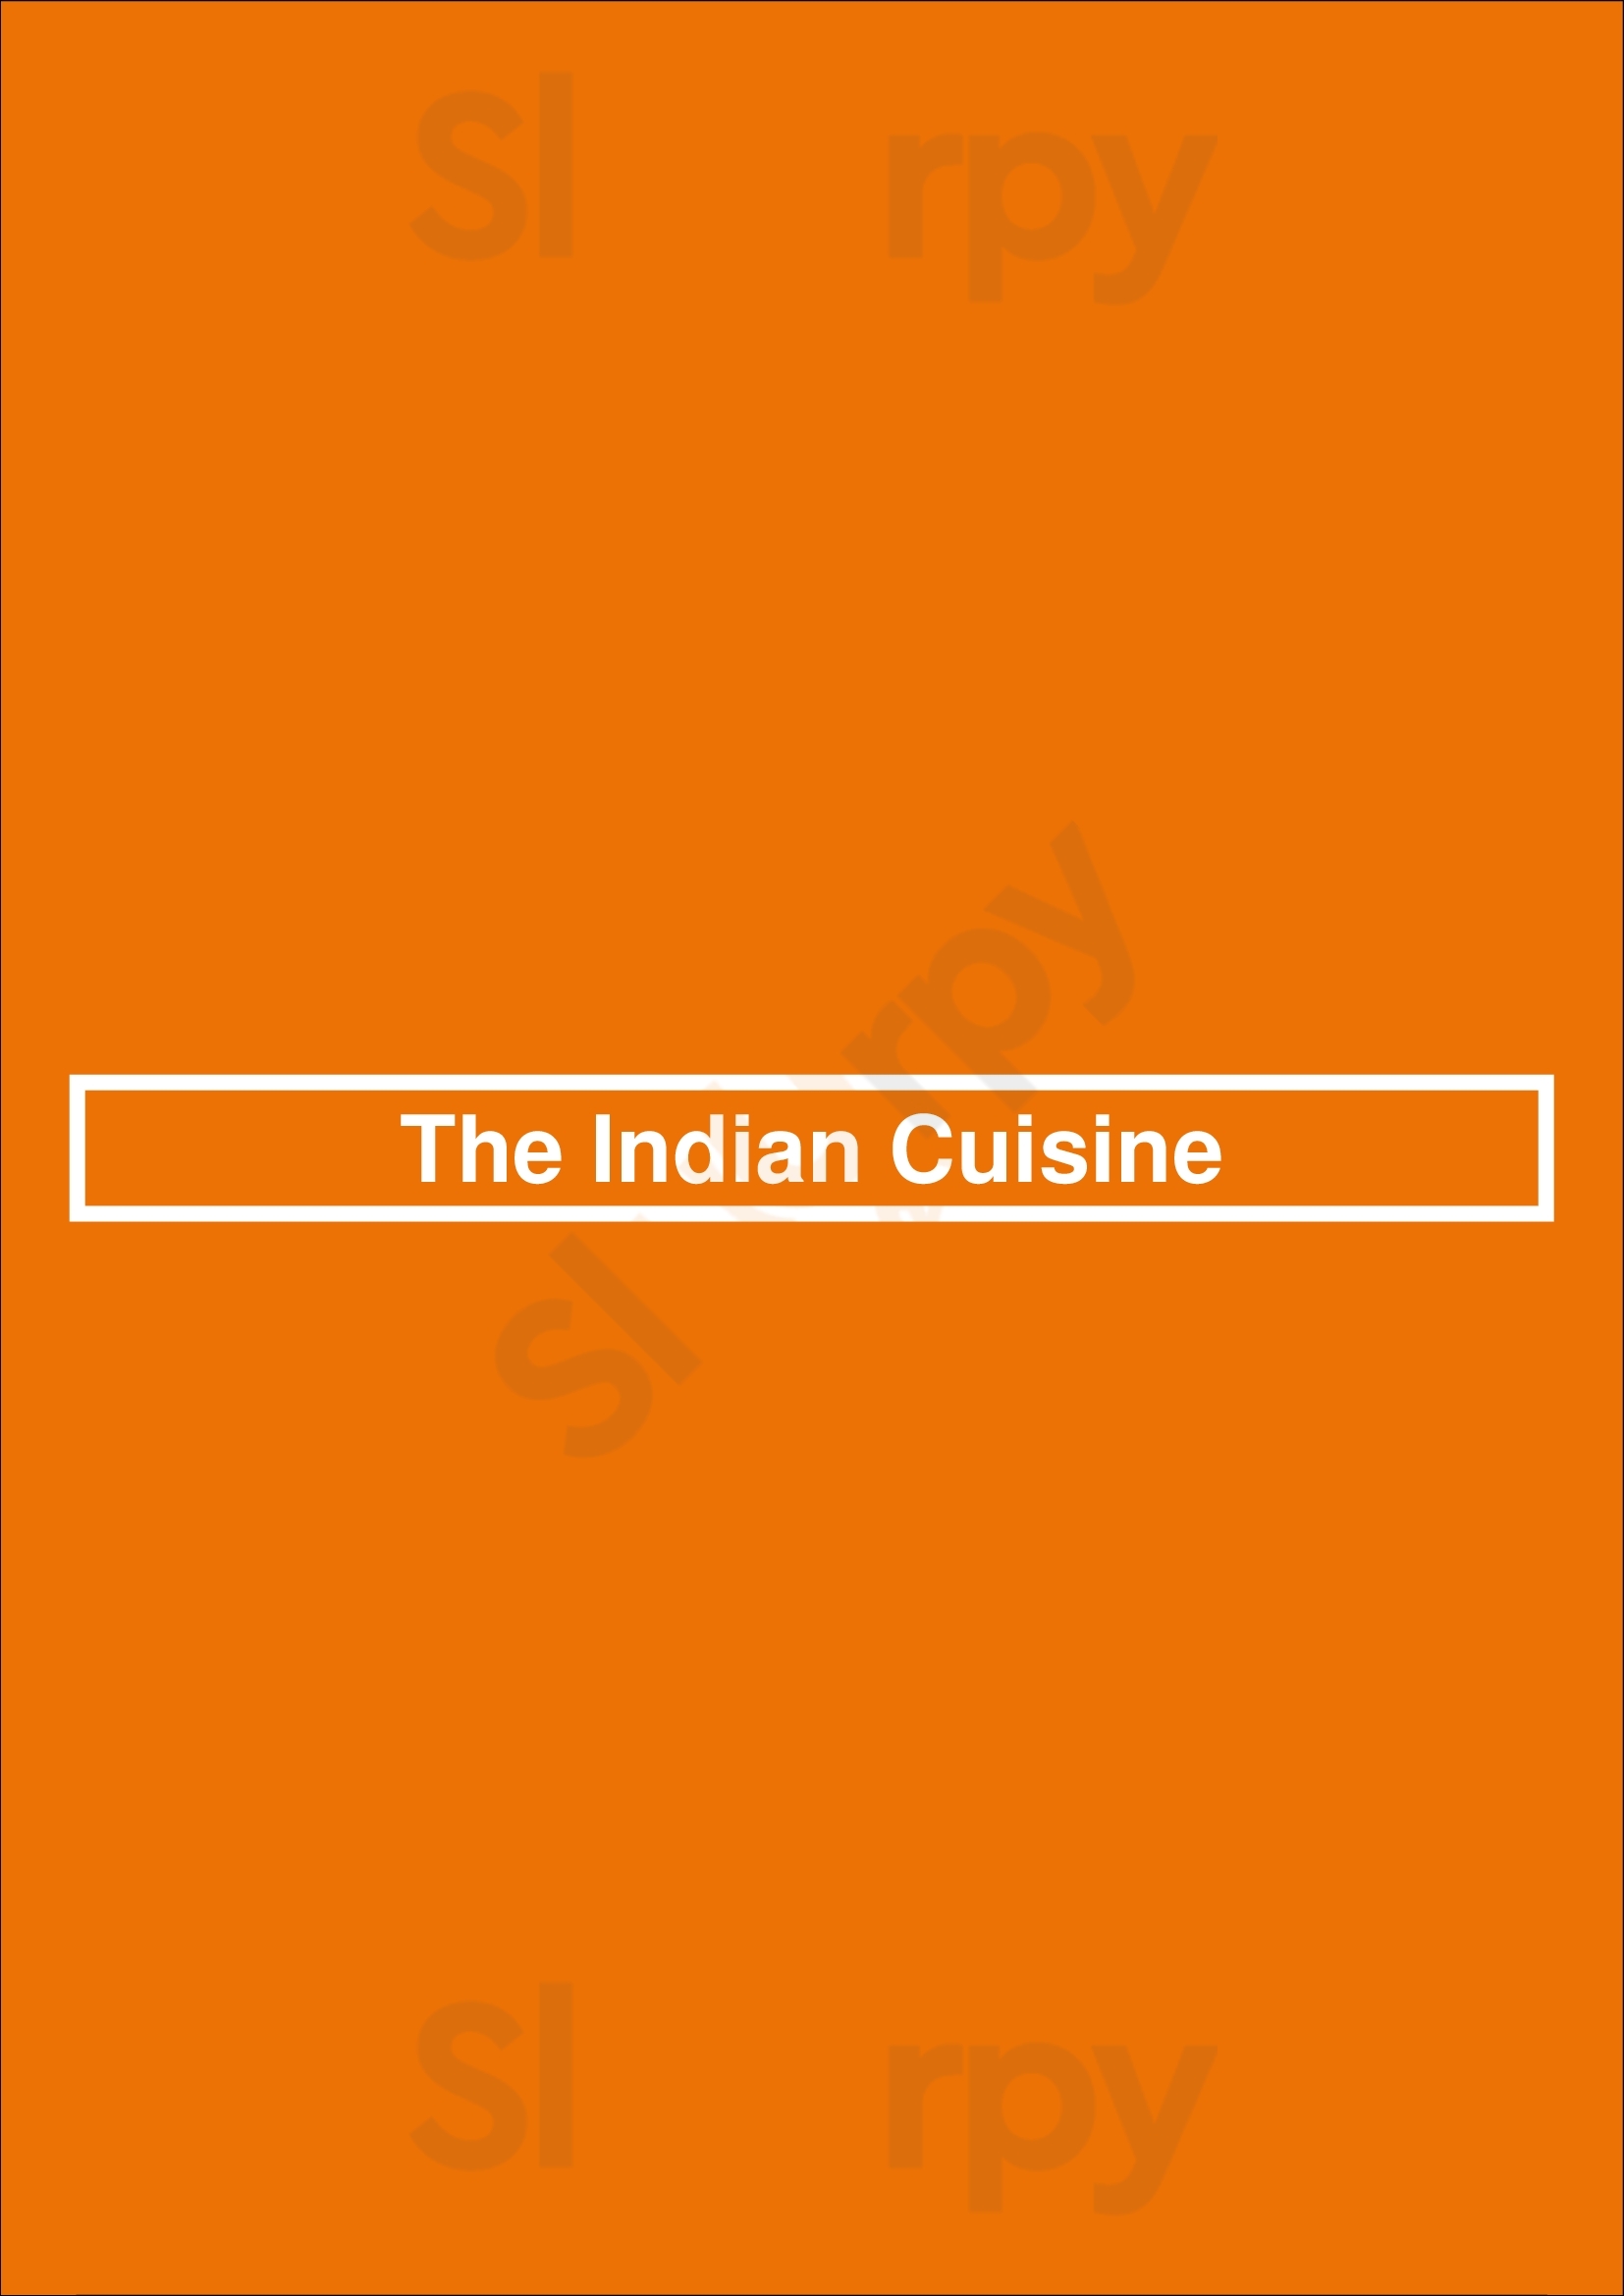 The Indian Cuisine Thornhill Menu - 1